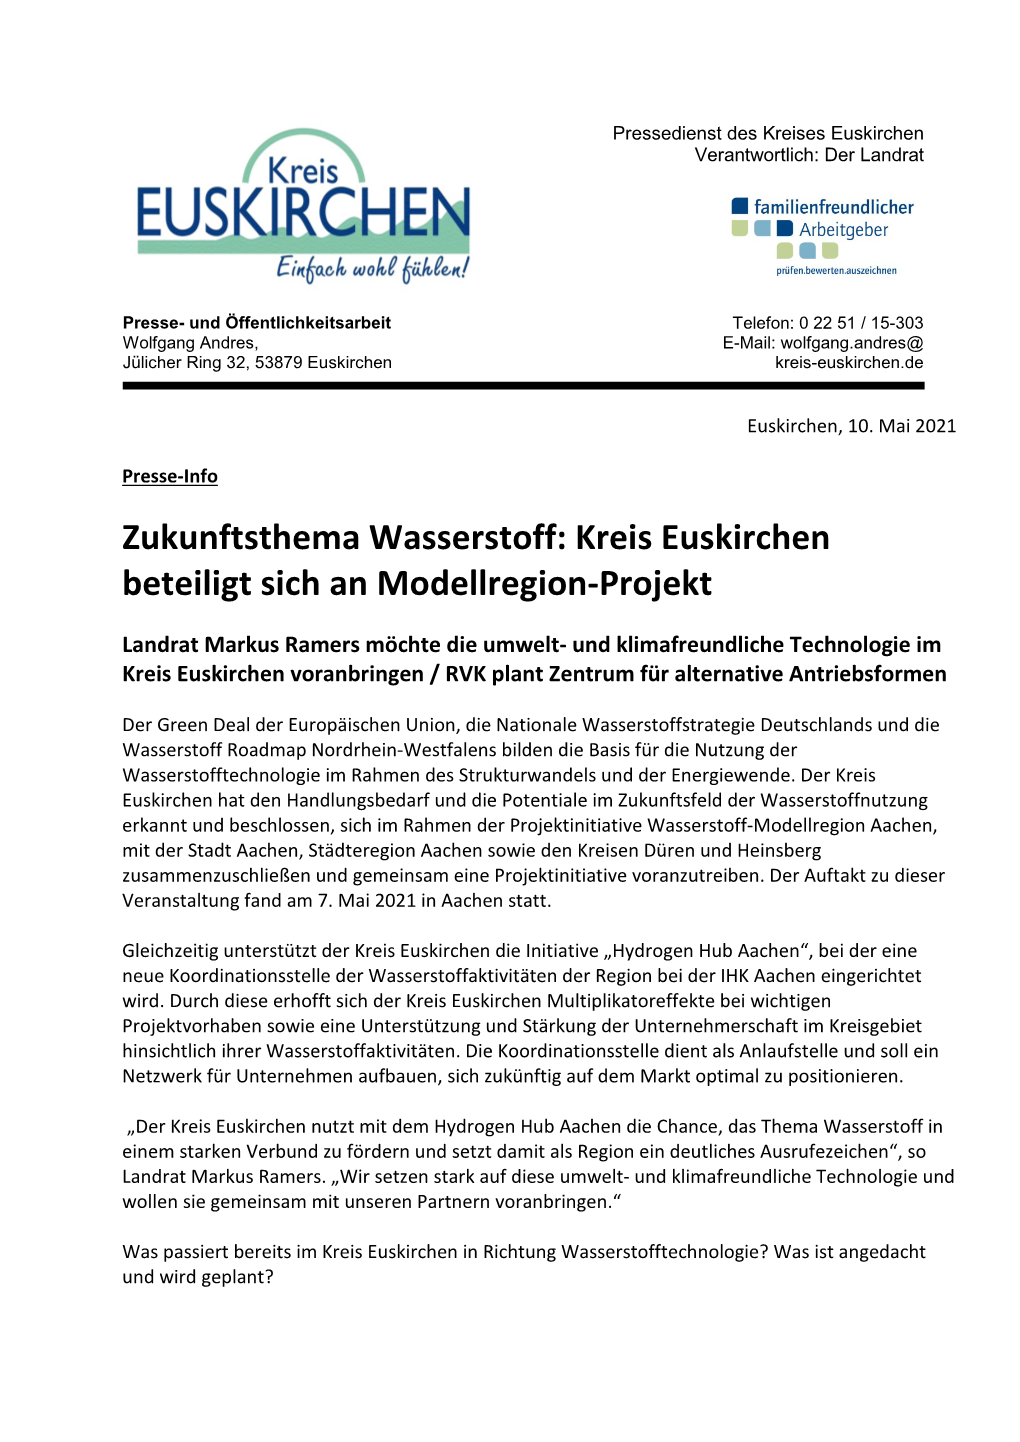 Zukunftsthema Wasserstoff: Kreis Euskirchen Beteiligt Sich an Modellregion-Projekt